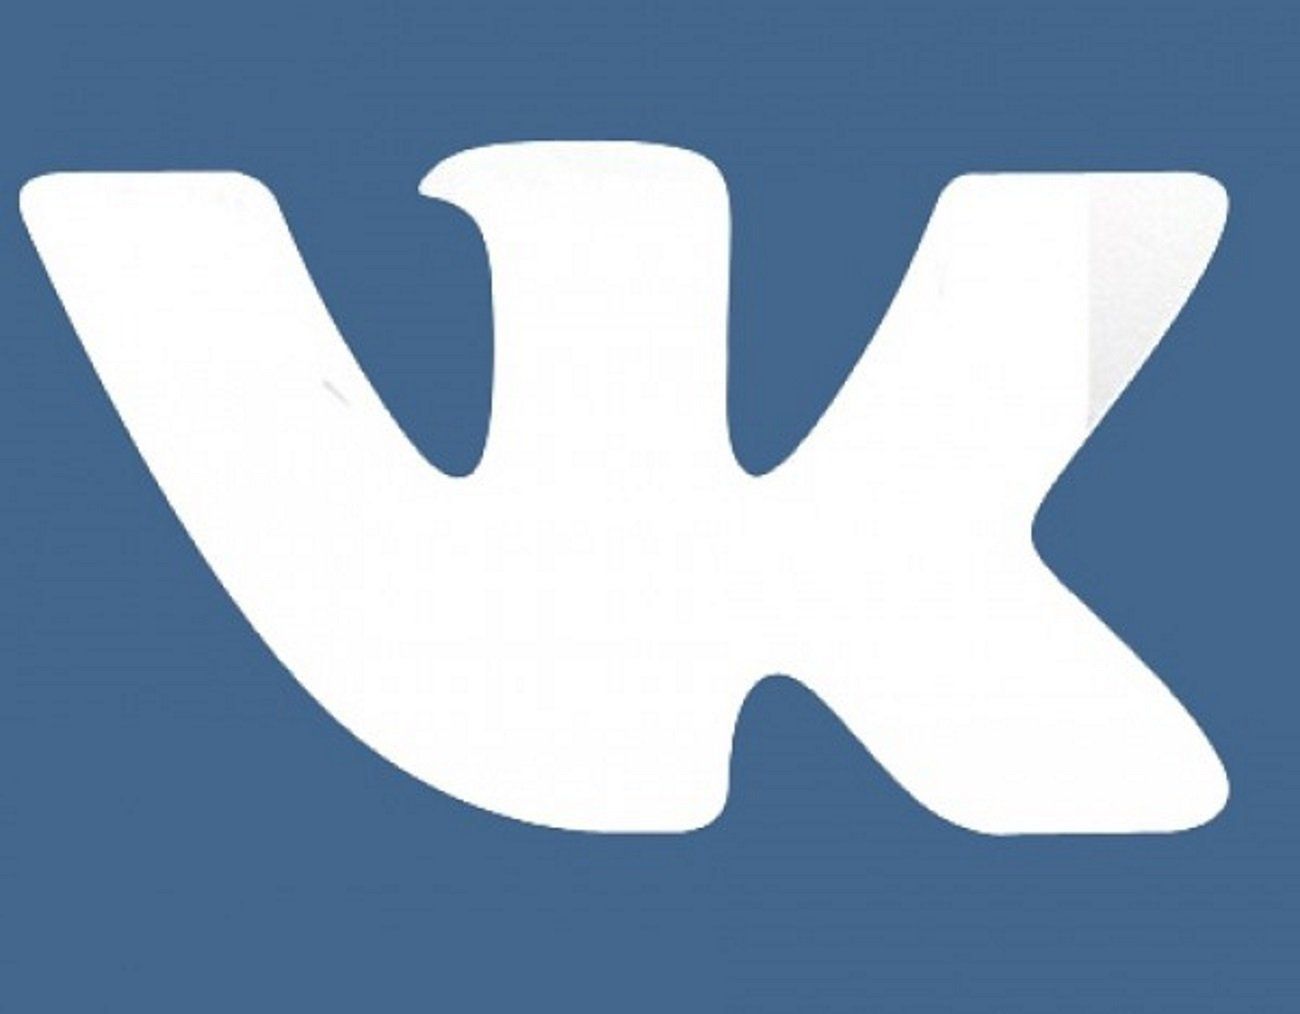 Vk com updates. Логотип ВК. Значок ВК черный. Иконка ВК 2022. Иконка ВК без фона.